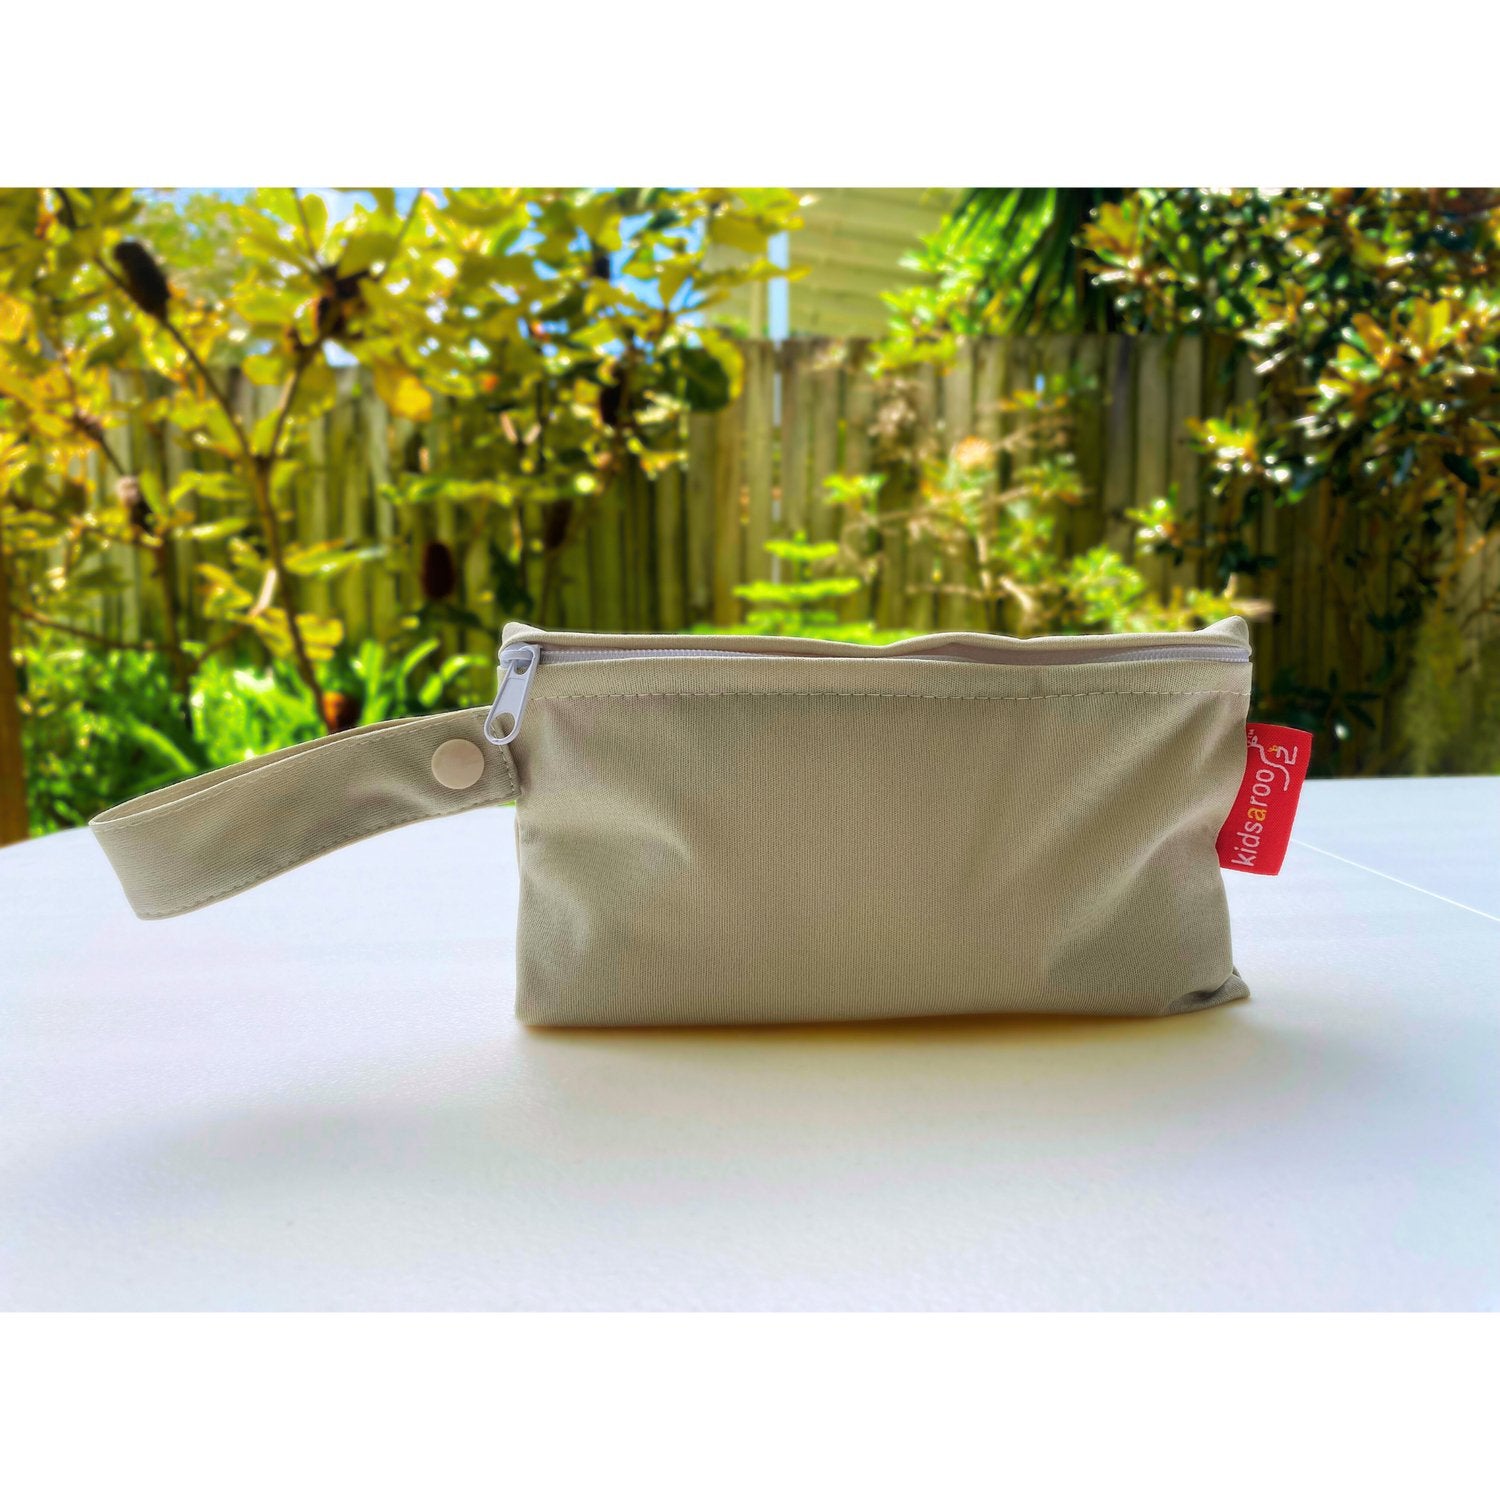 Swim Nappy & Mini Wet Bag Set - Size large -11+kg - Kidsaroo